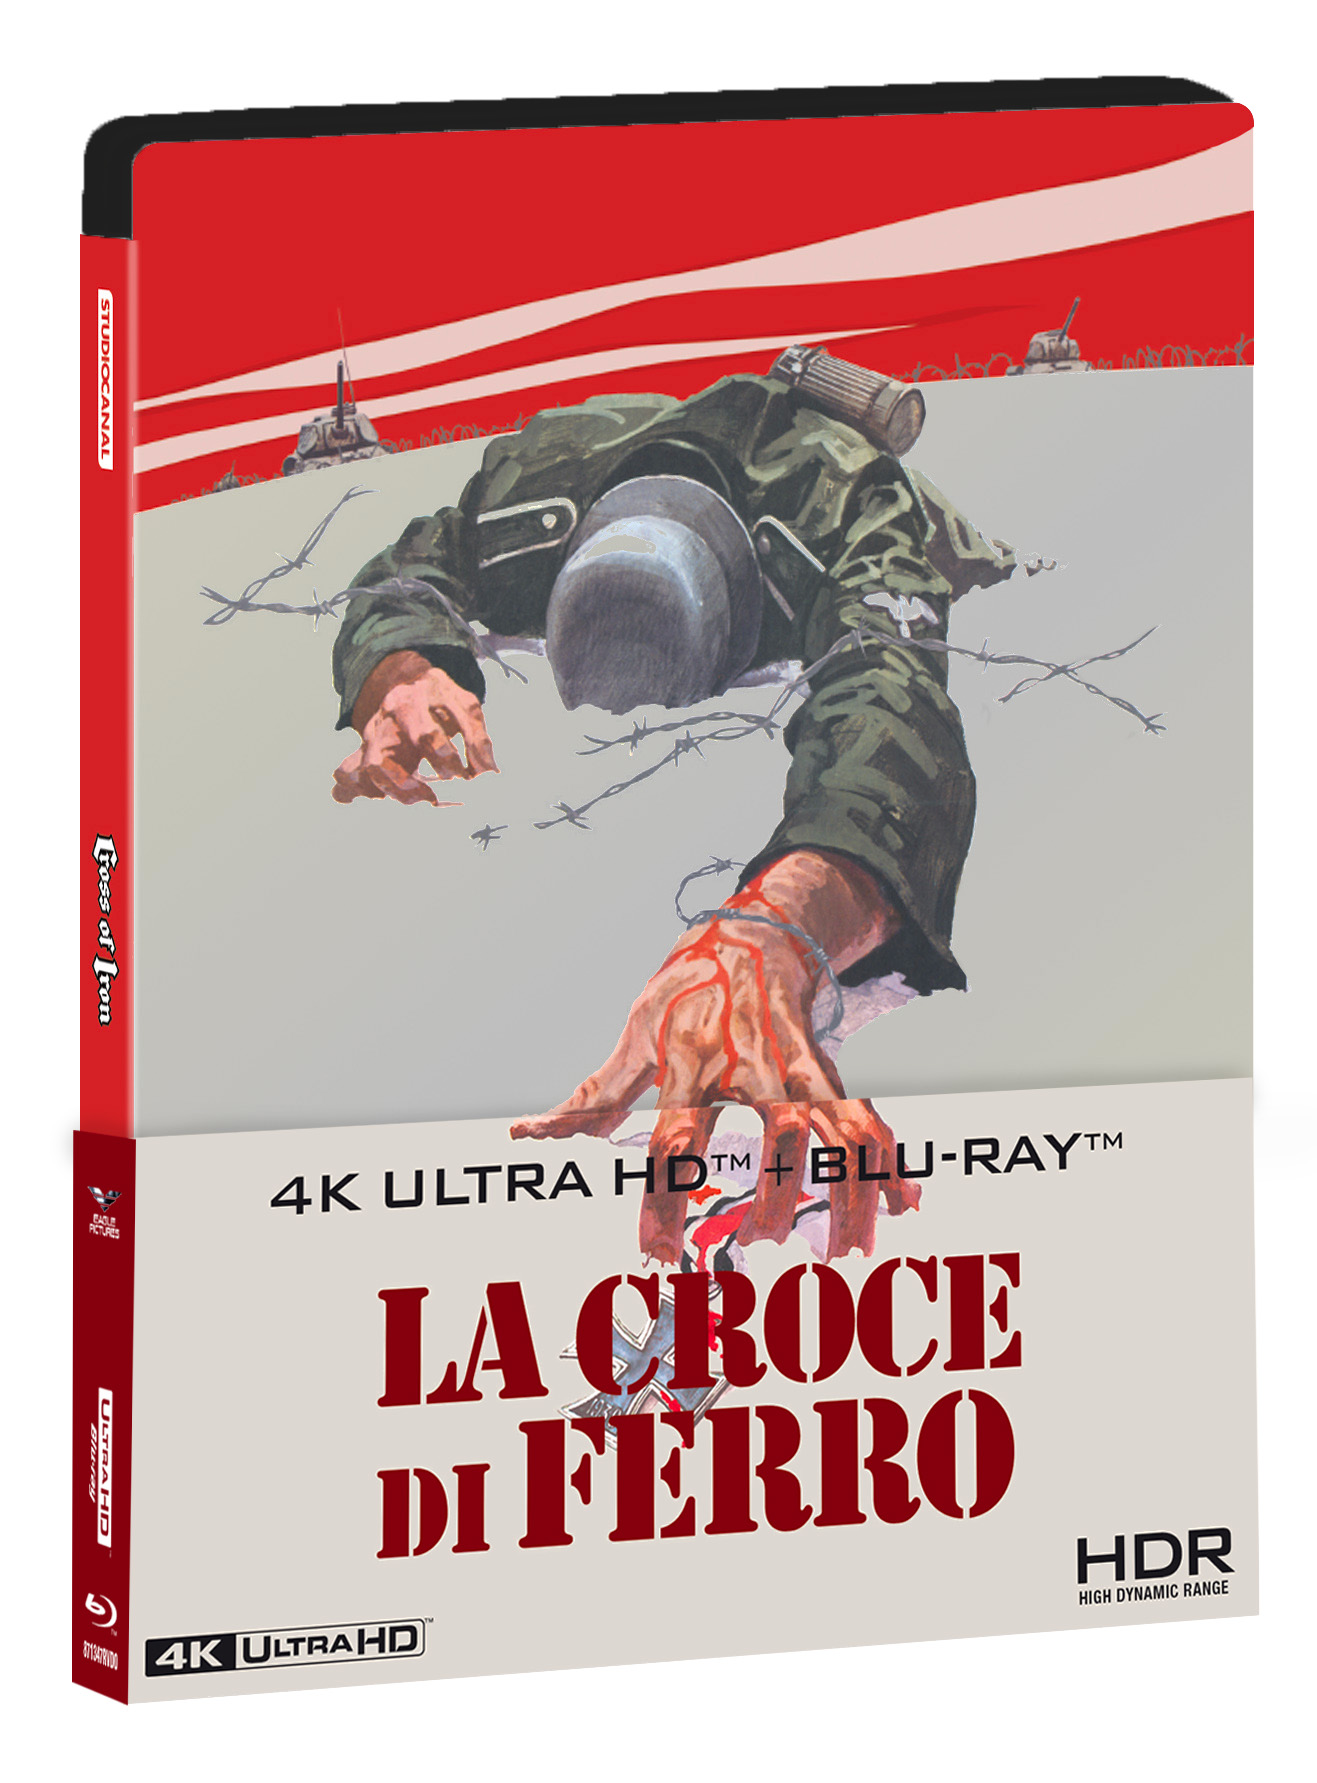 4K Uhd Croce Di Ferro La Steelbook 4K Ultra Hd+ Hd NUOVO SIGILLATO EDIZIONE DEL SUBITO DISPONIBILE blu-ray